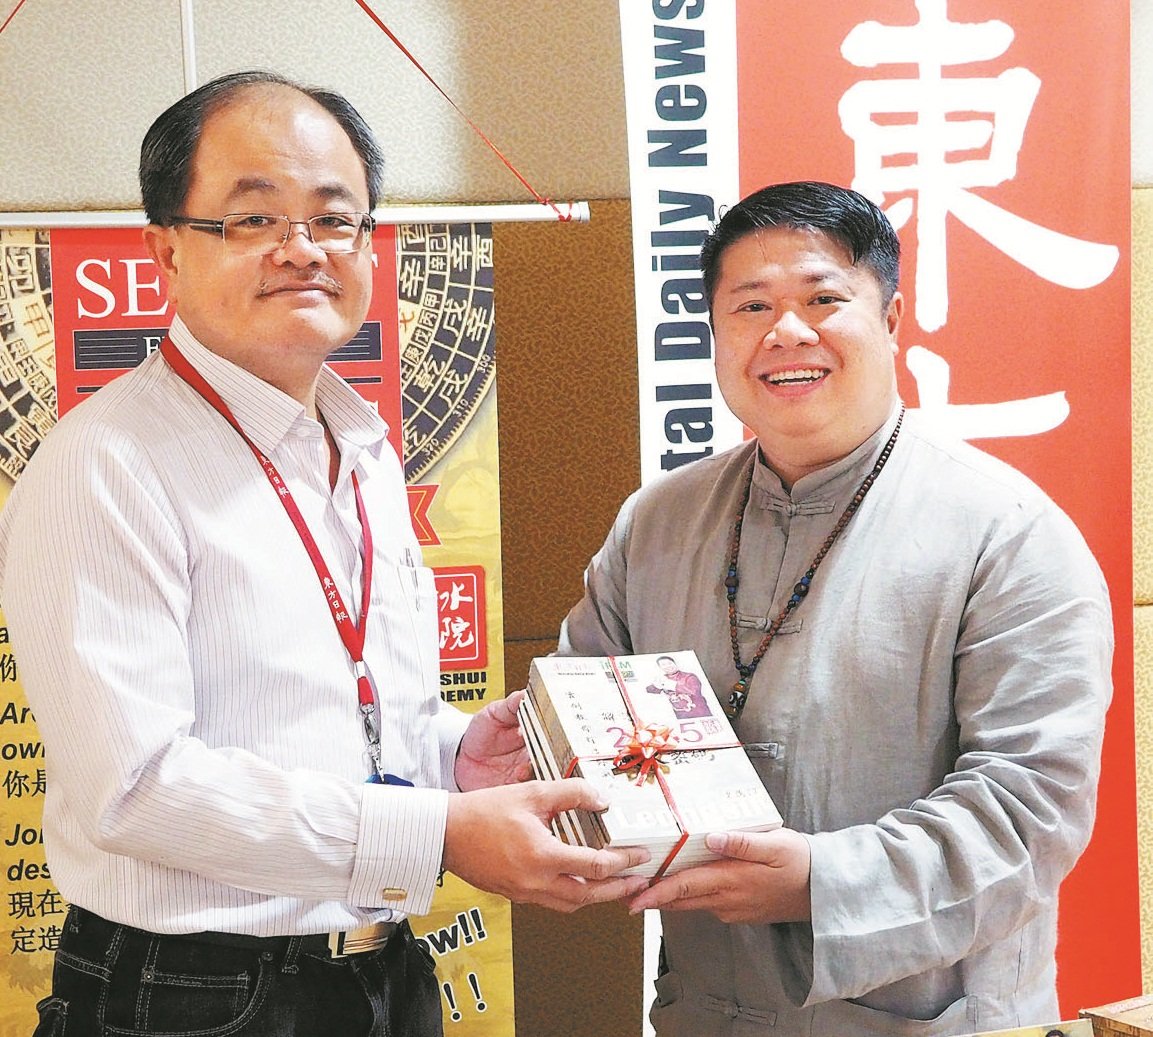 梁庸陞（右）赠送新书《解读2015风水密码》给陈利良。